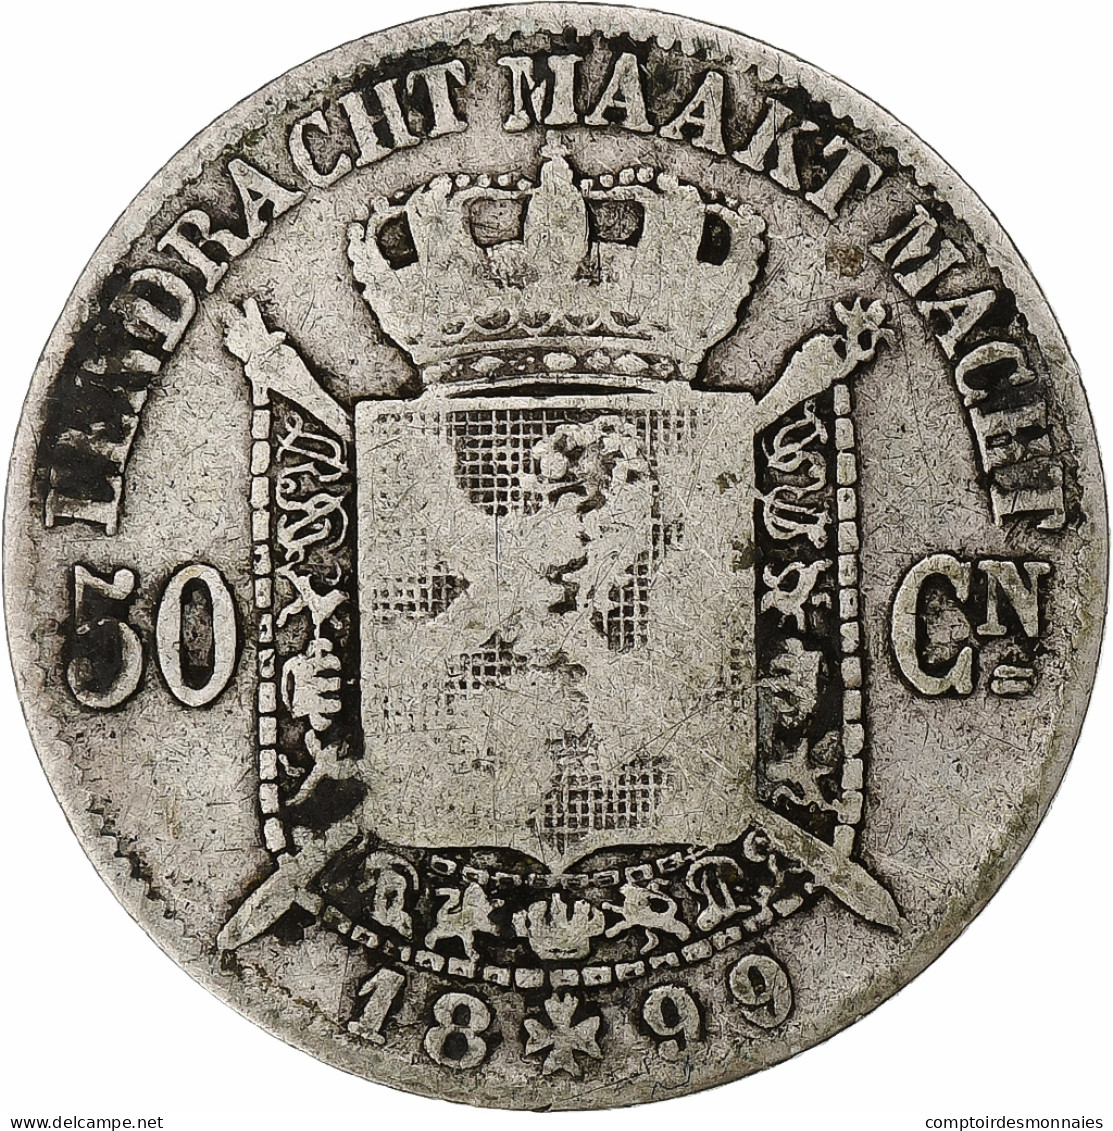 Monnaie, Belgique, Leopold II, 50 Centimes, 1899, TB, Argent, KM:27 - 50 Centimes